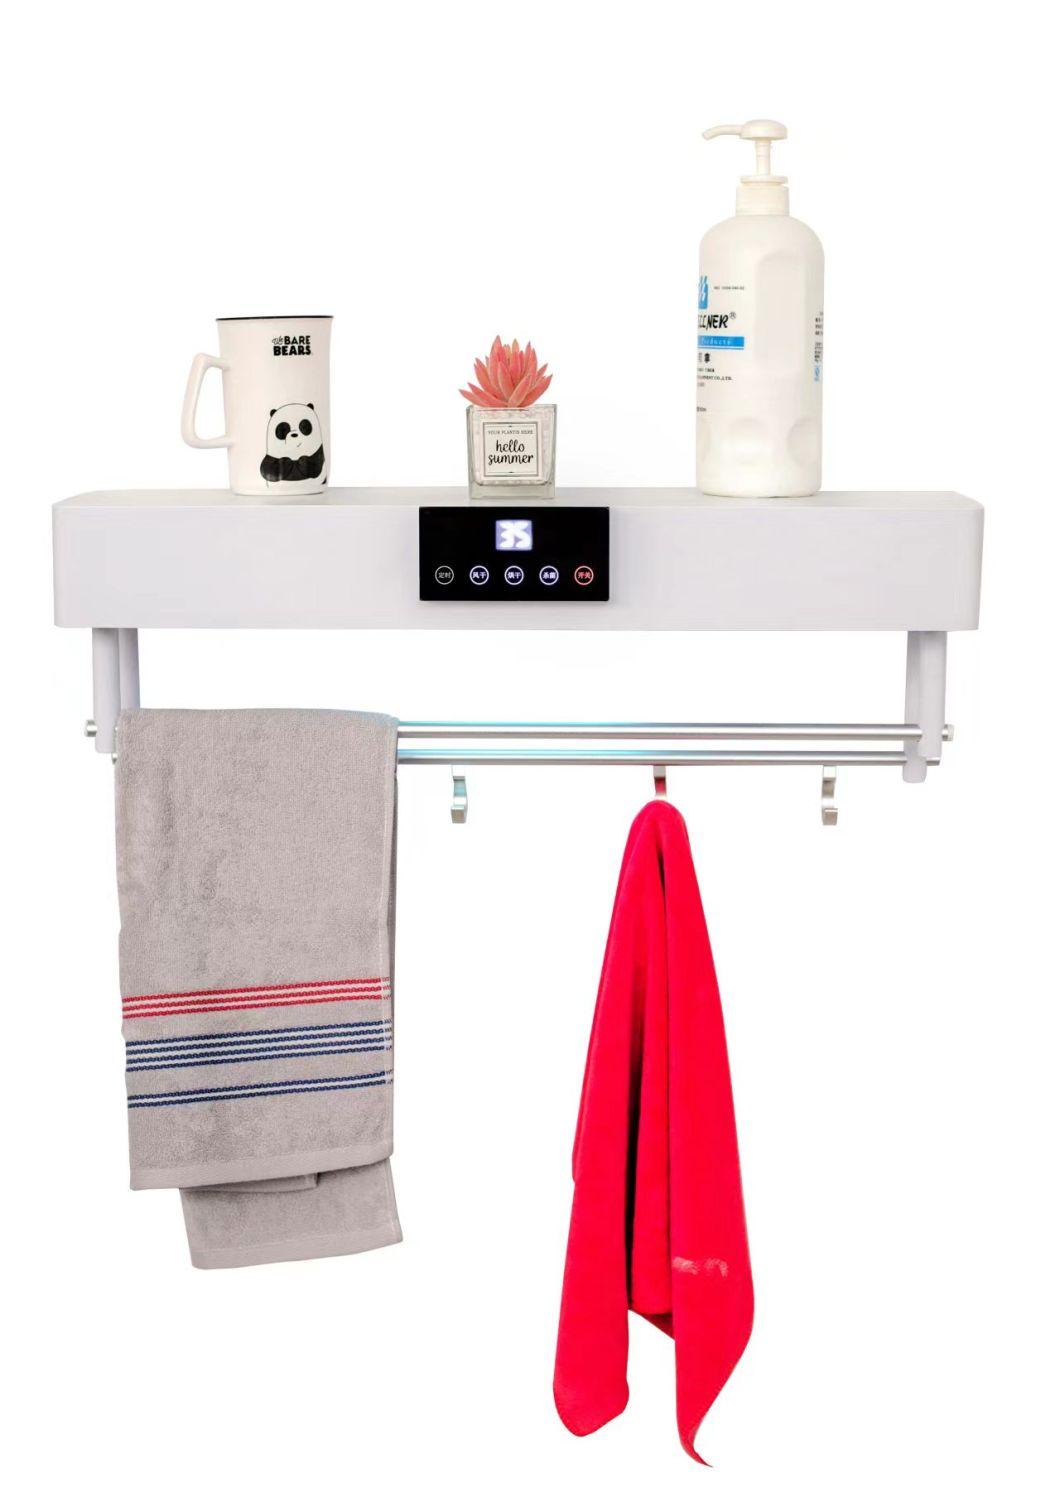 Towel Rack, Smart Towel Dryer, Electric Towel Rack, Bathroom Towel Rack